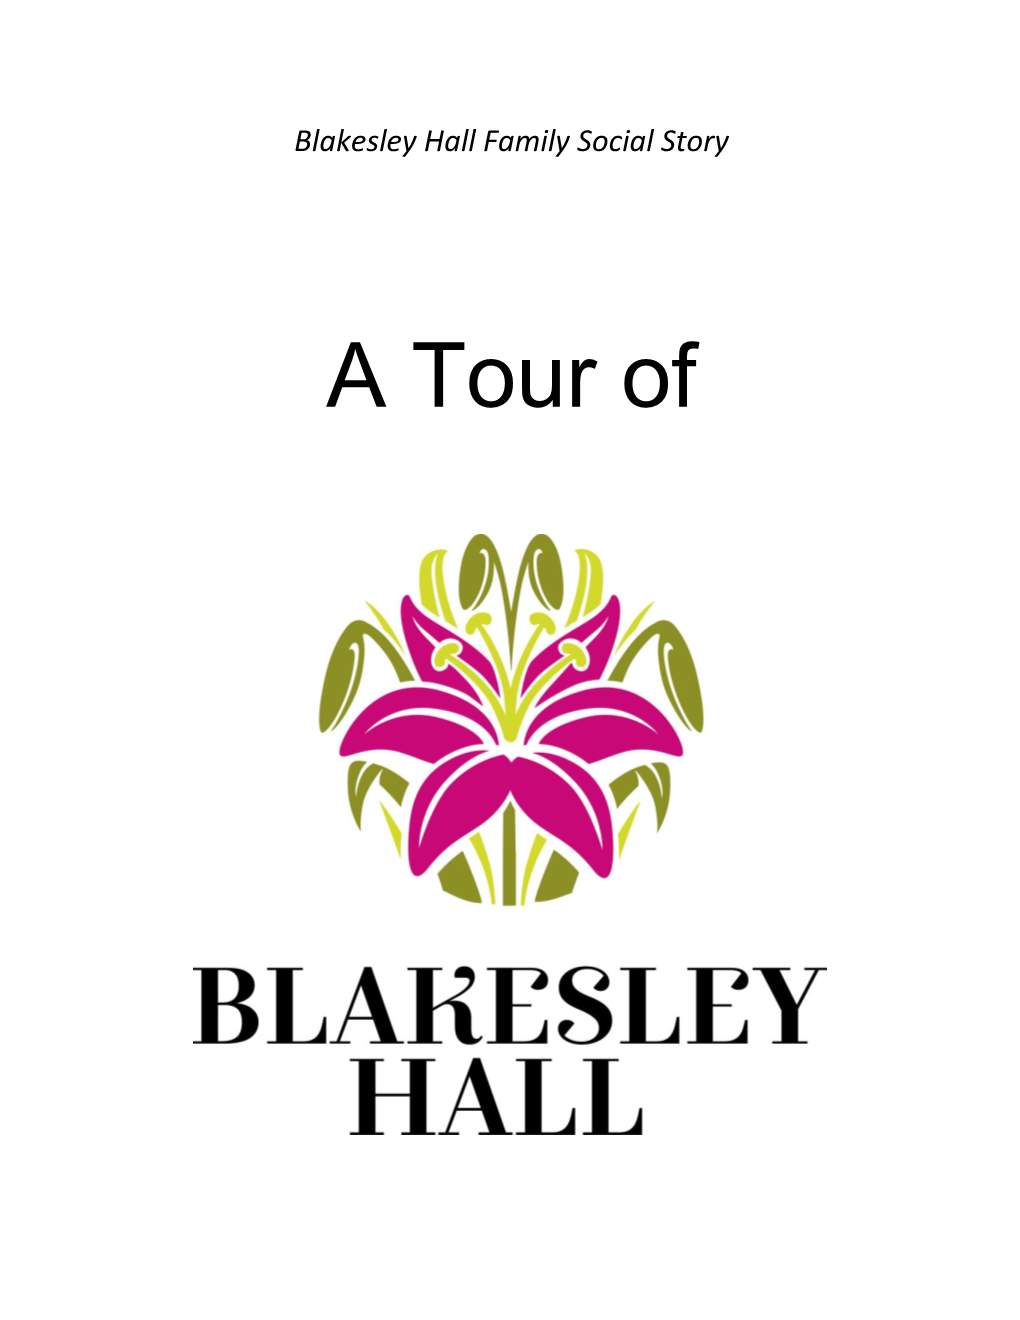 A Tour of Blakesley Hall